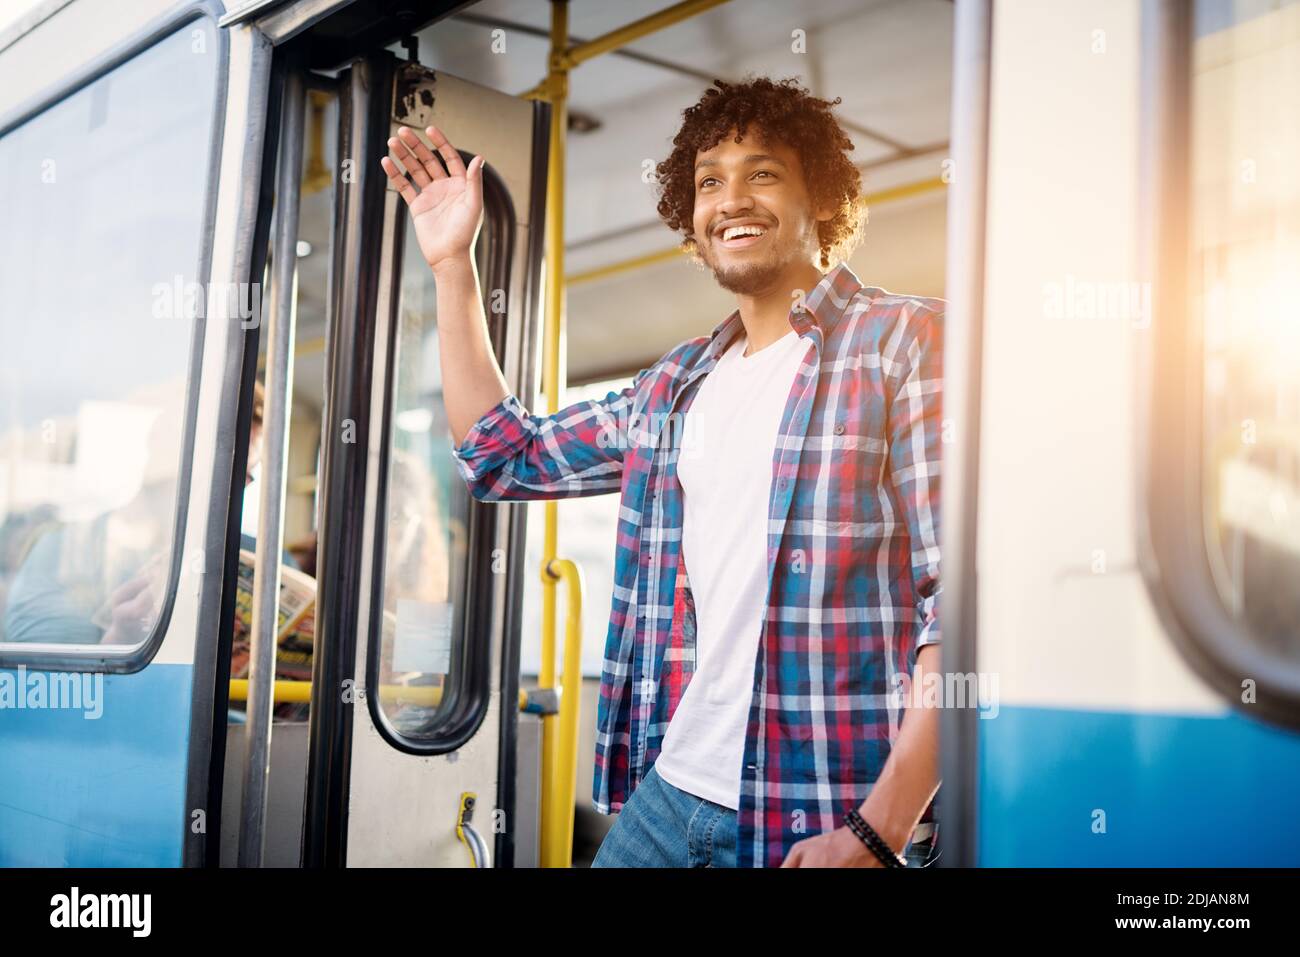 Jeune homme joyeux et joyeux agite avec un sourire sur son visage lorsqu'il quitte le bus. Banque D'Images